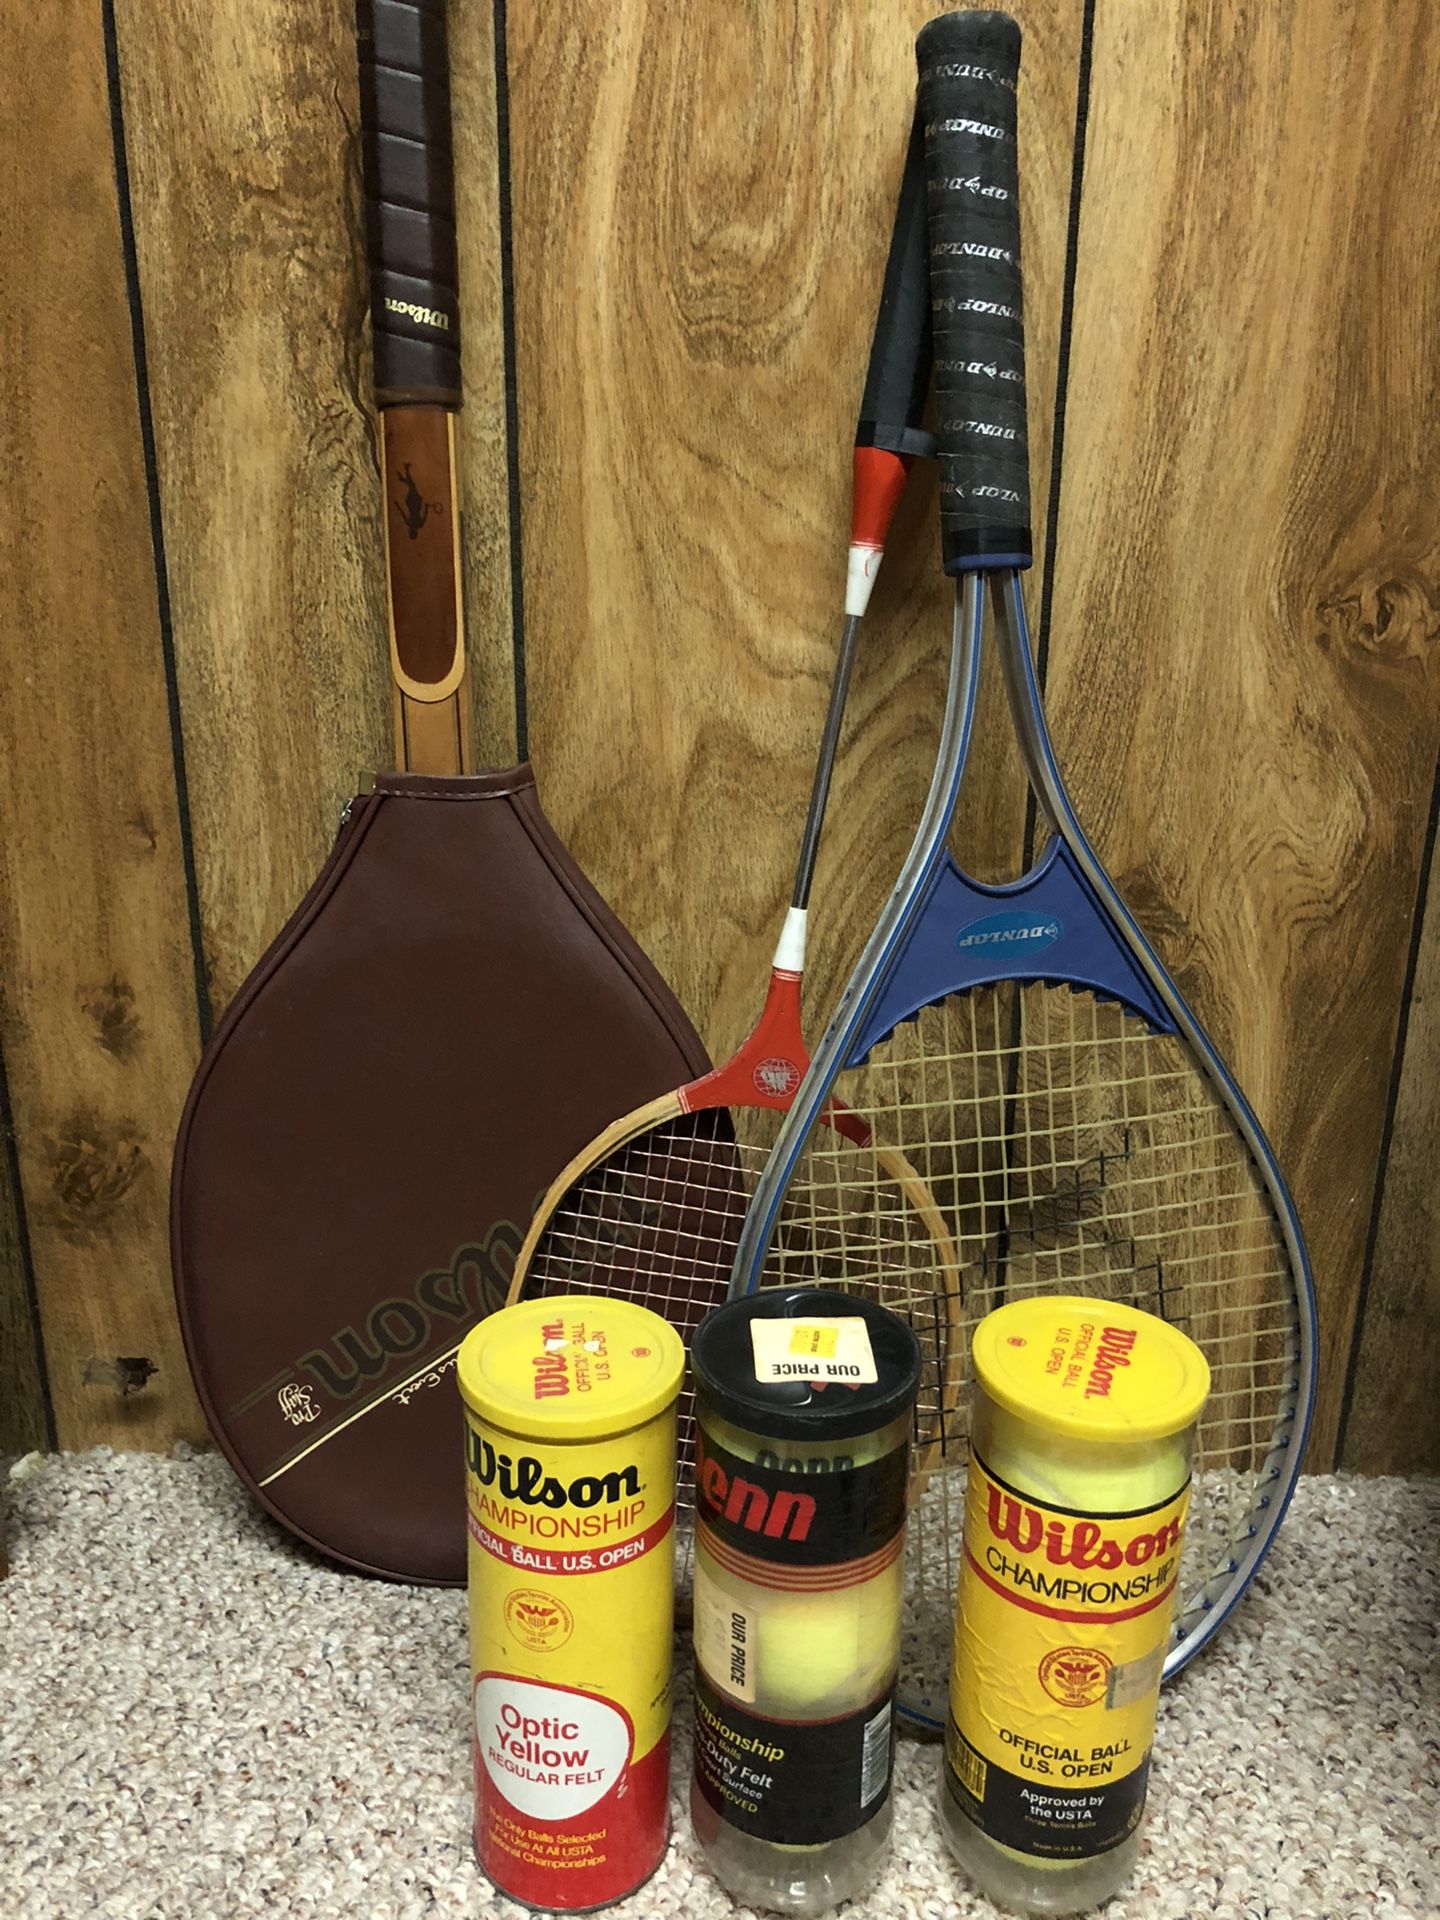 Tennis Rackets and Tennis Balls